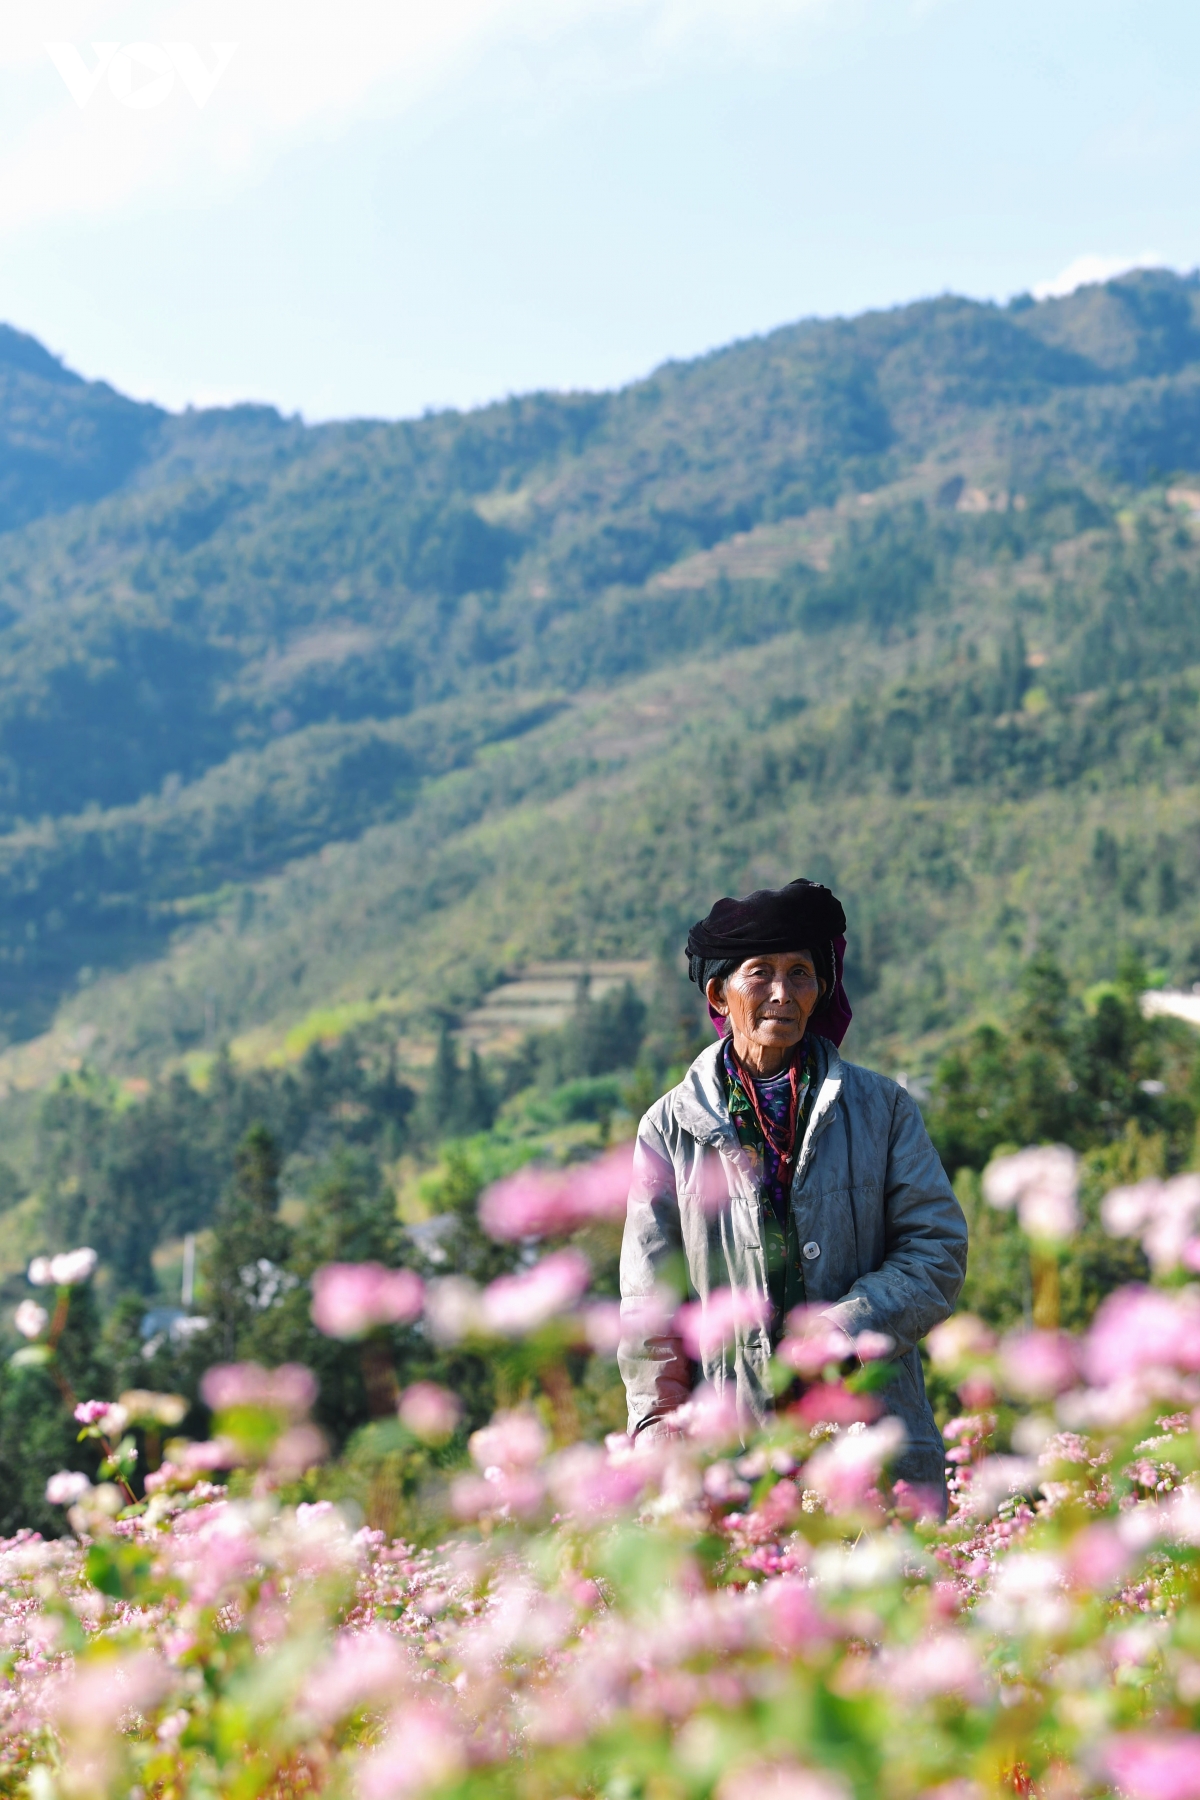 Mê đắm sắc hoa Tam giác mạch nở rộ ở Hà Giang